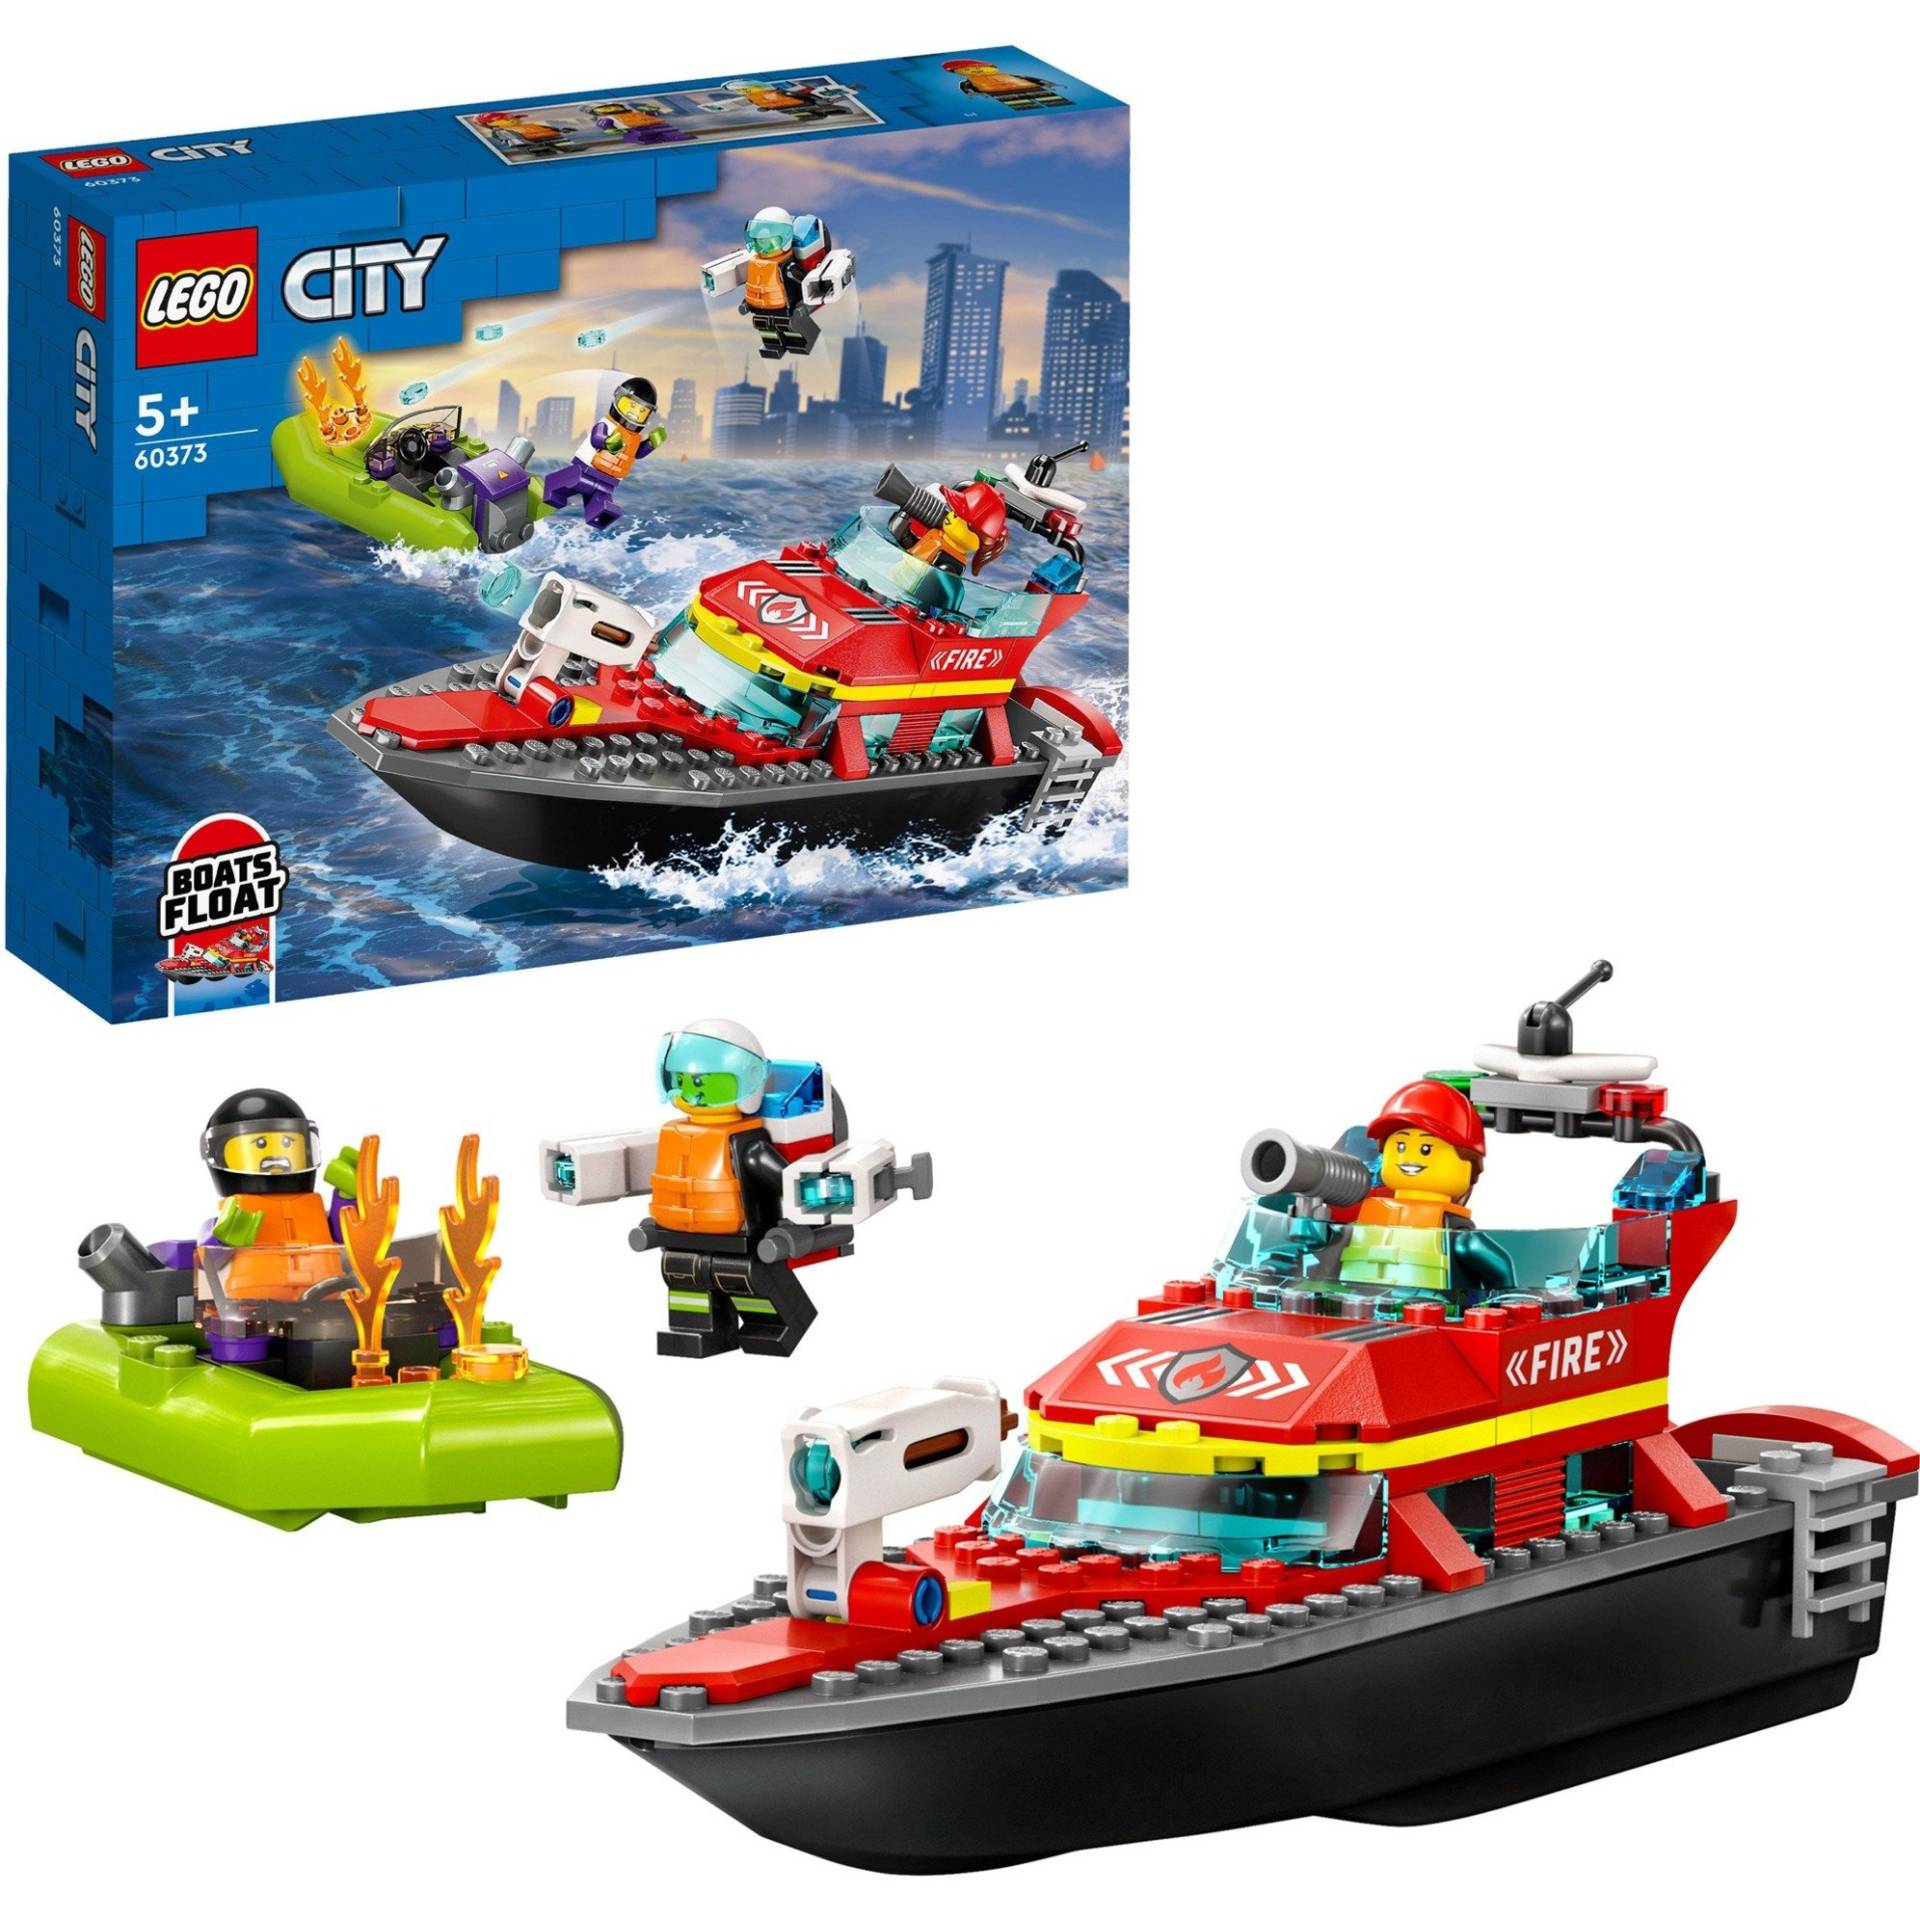 60373 City Feuerwehrboot, Konstruktionsspielzeug von Lego